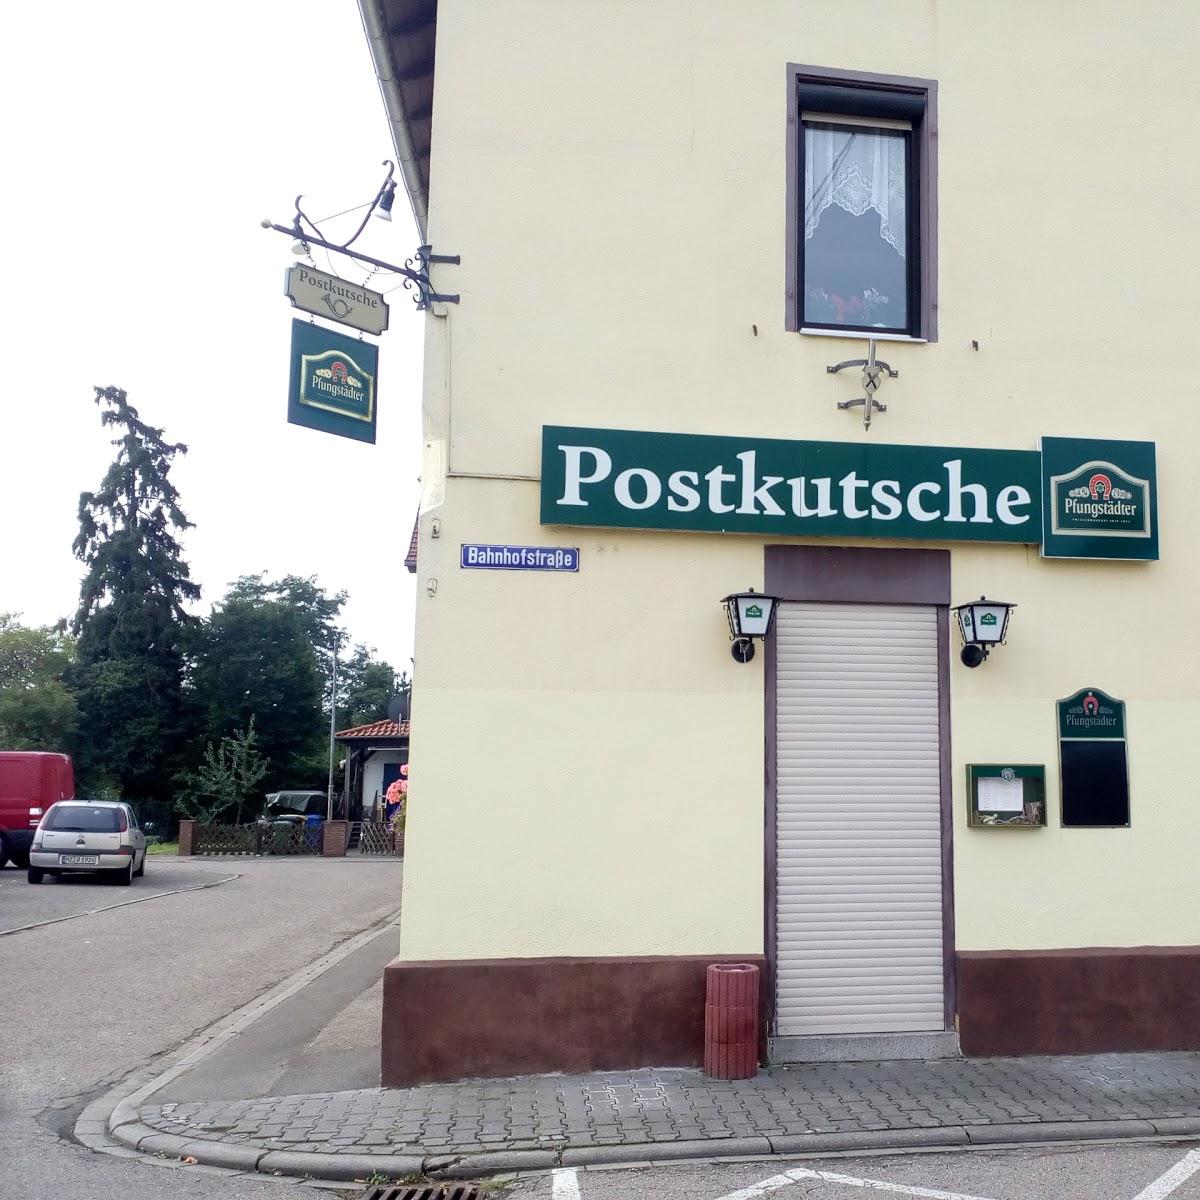 Restaurant "Speisegaststätte Postkutsche" in Alsheim